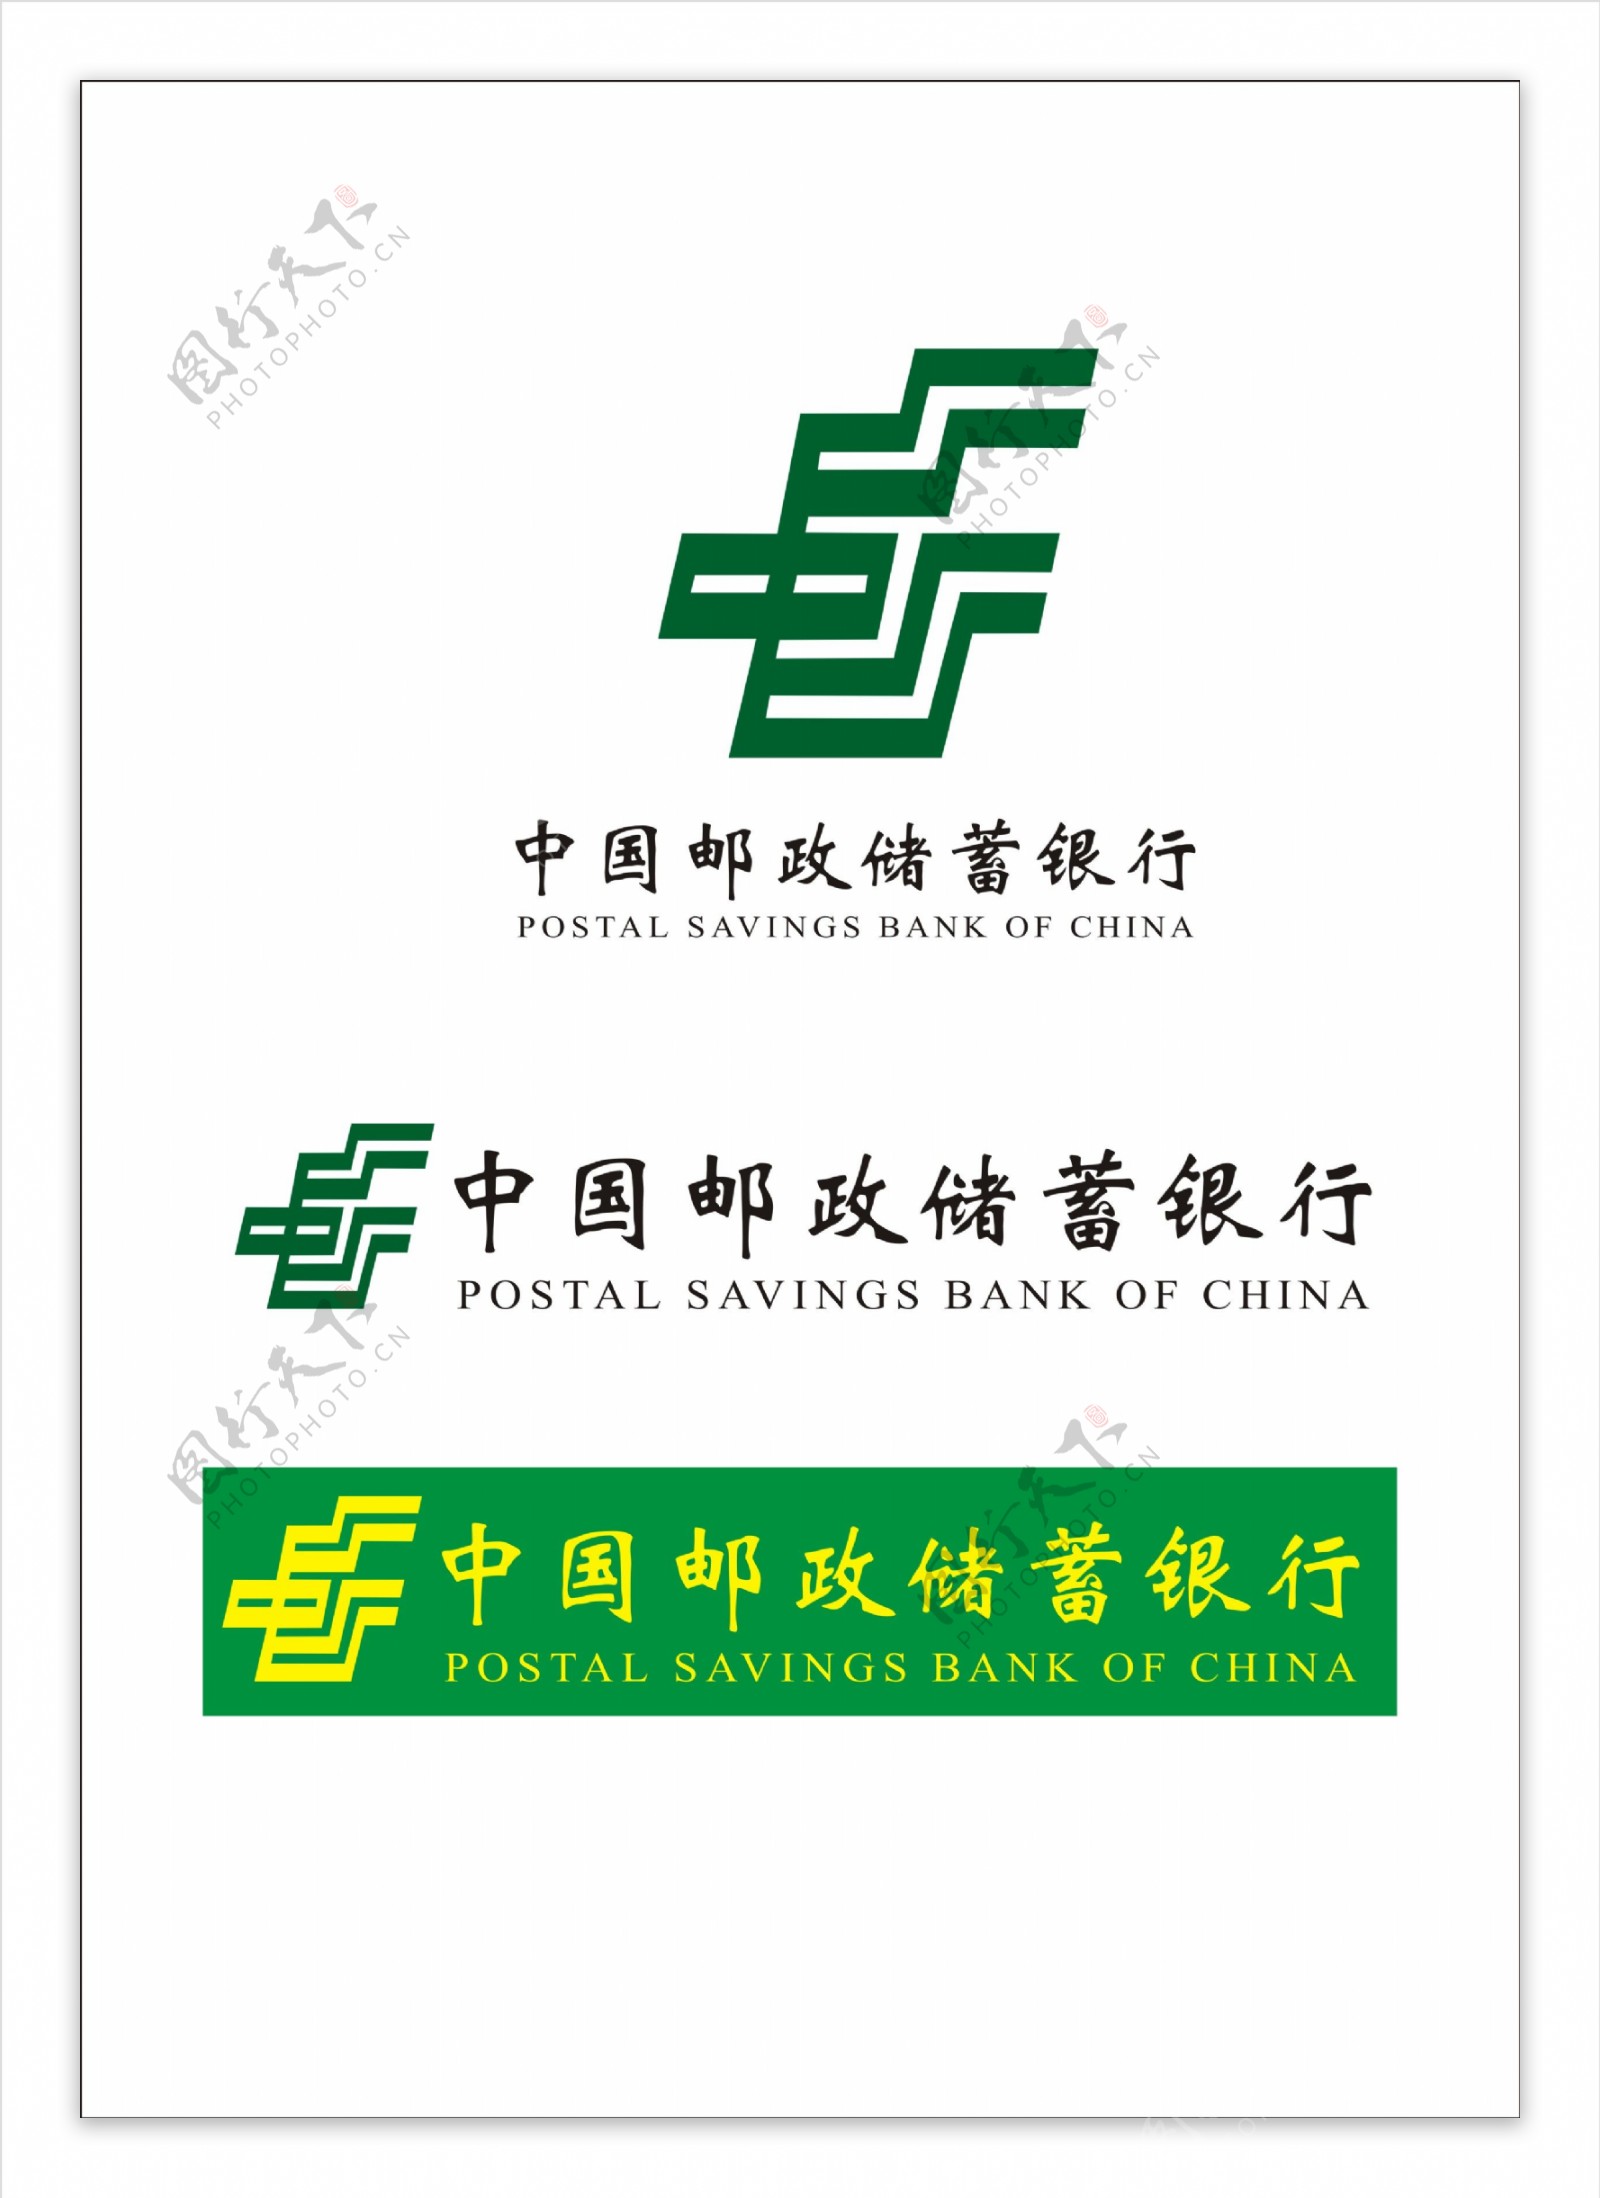 中国邮政储蓄银行logo素材